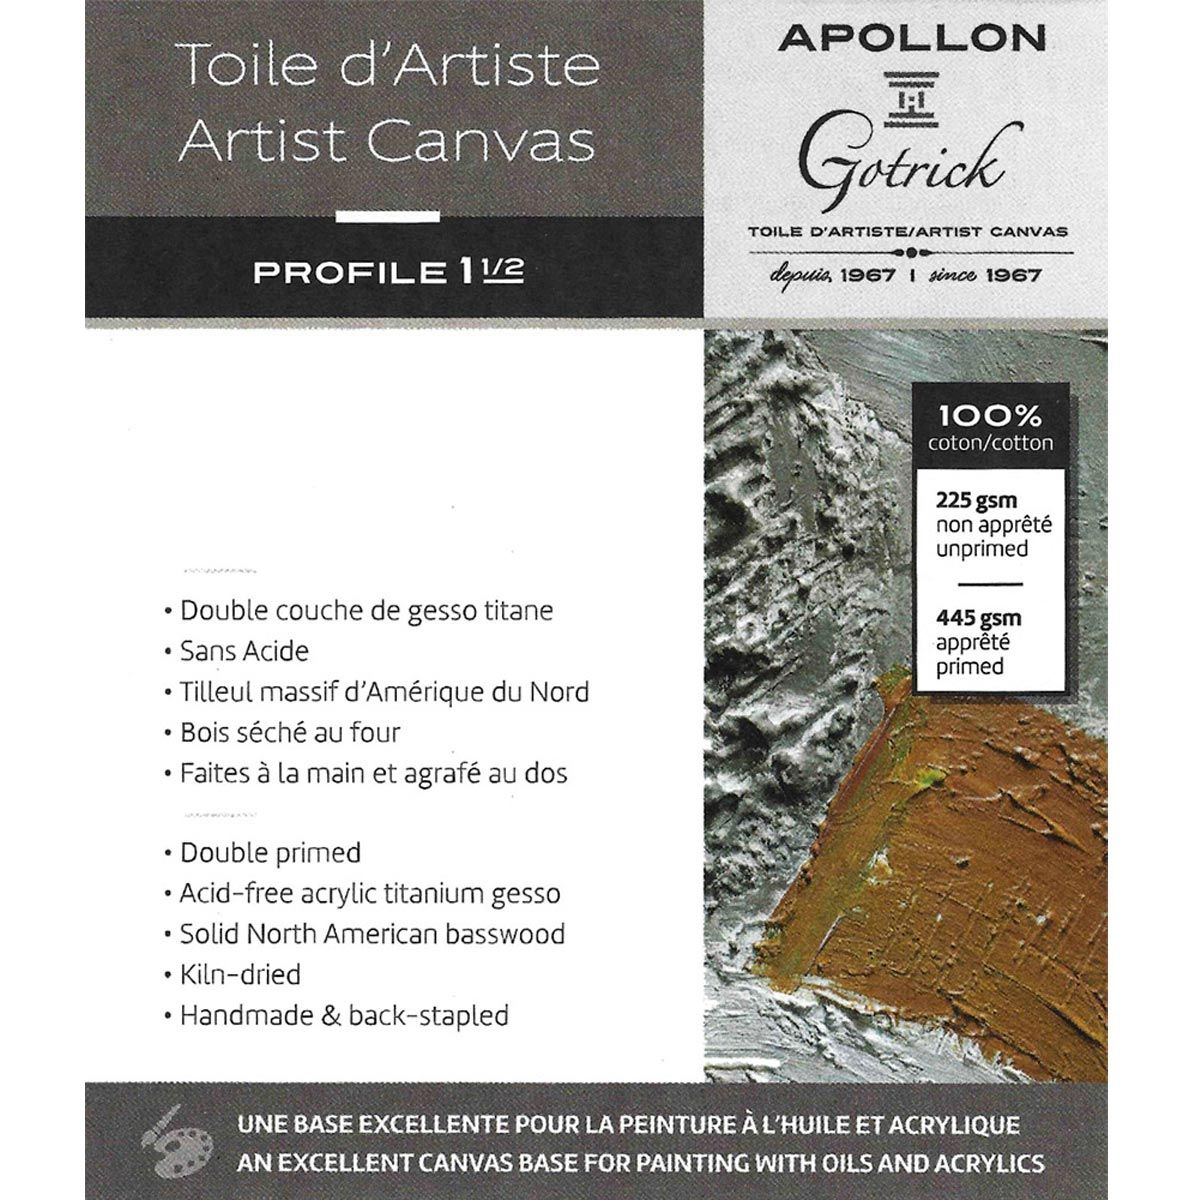 Apollon Gotrick Gallery Artist Canvas Profile 1½" - 10" x 10"